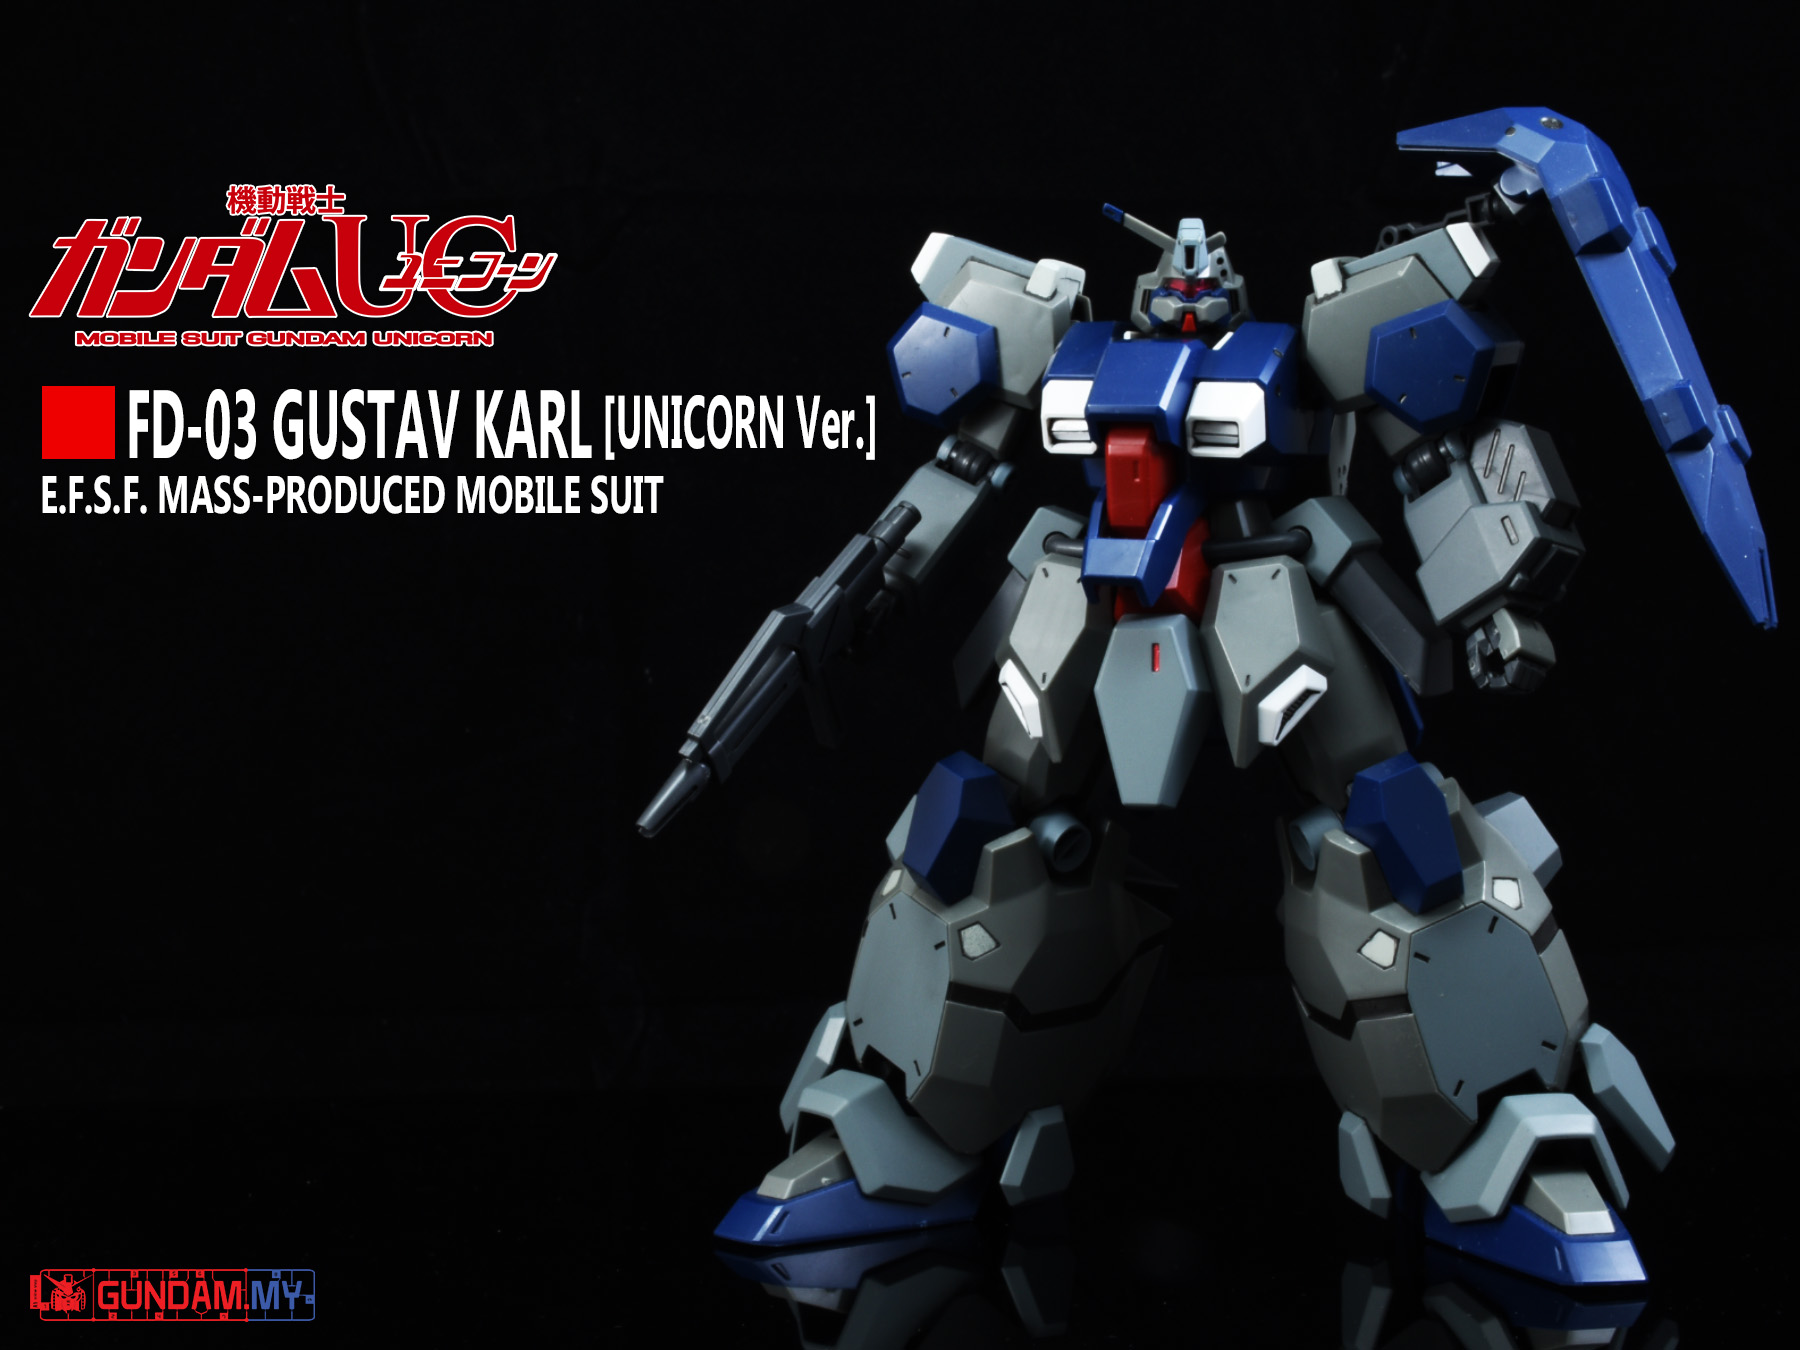 Photo Gallery Hguc 1 144 Fd 03 Gustav Karl Unicorn Ver Gundam My Blog